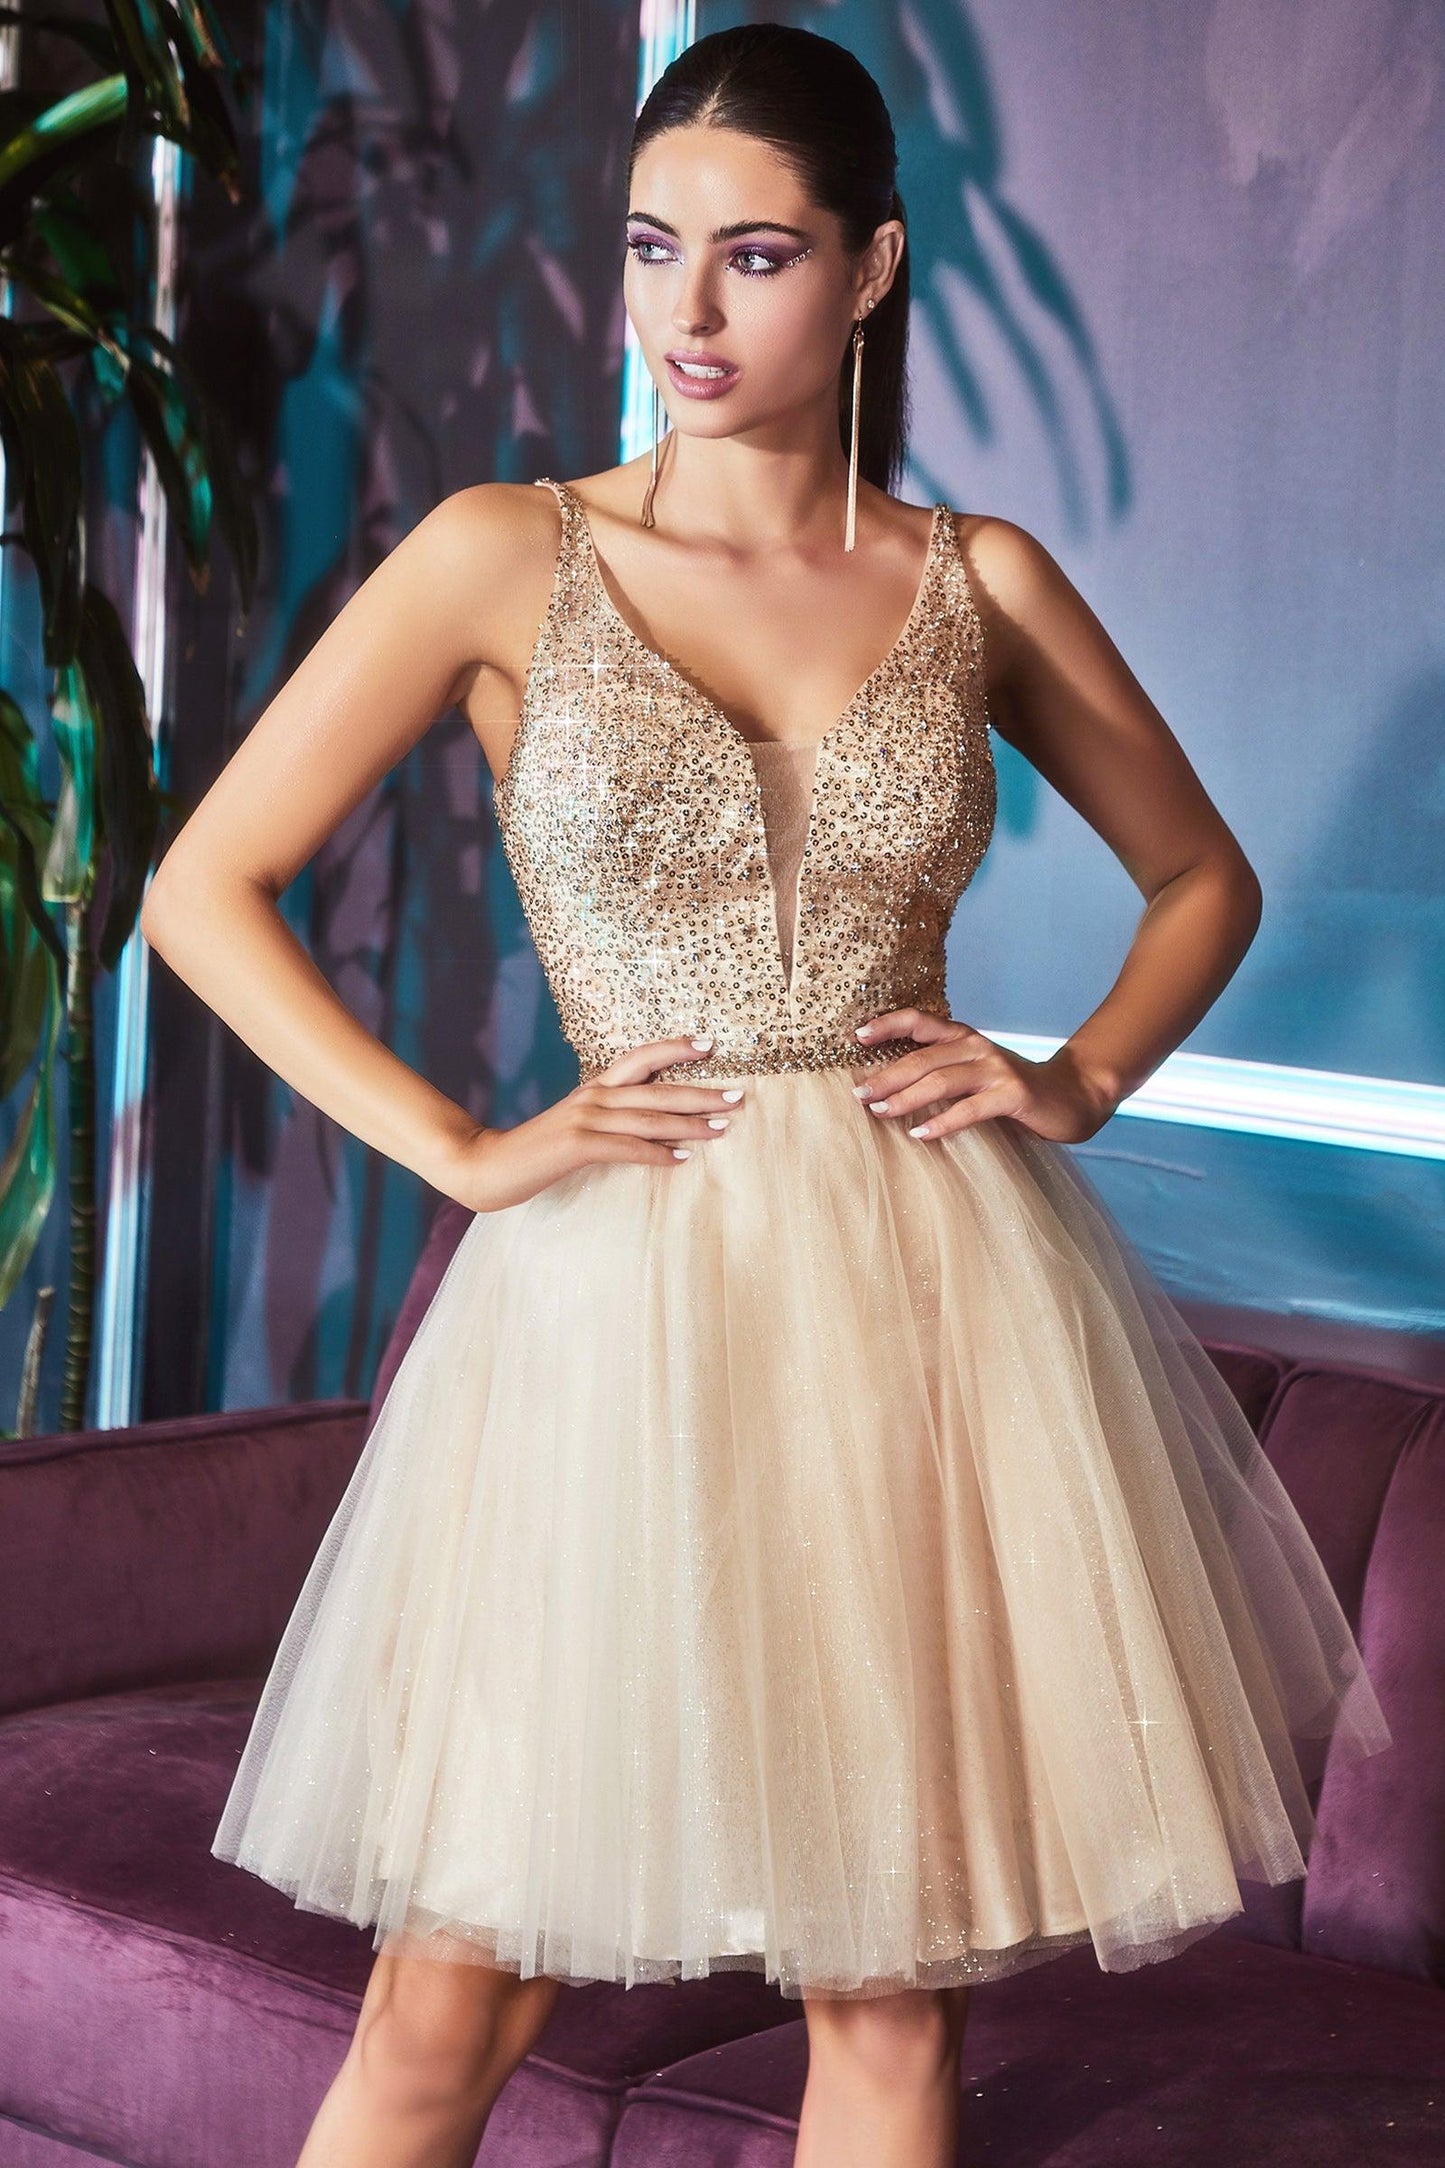 Homecoming Short Sleeveless Glitter Skirt Prom Dress - The Dress Outlet